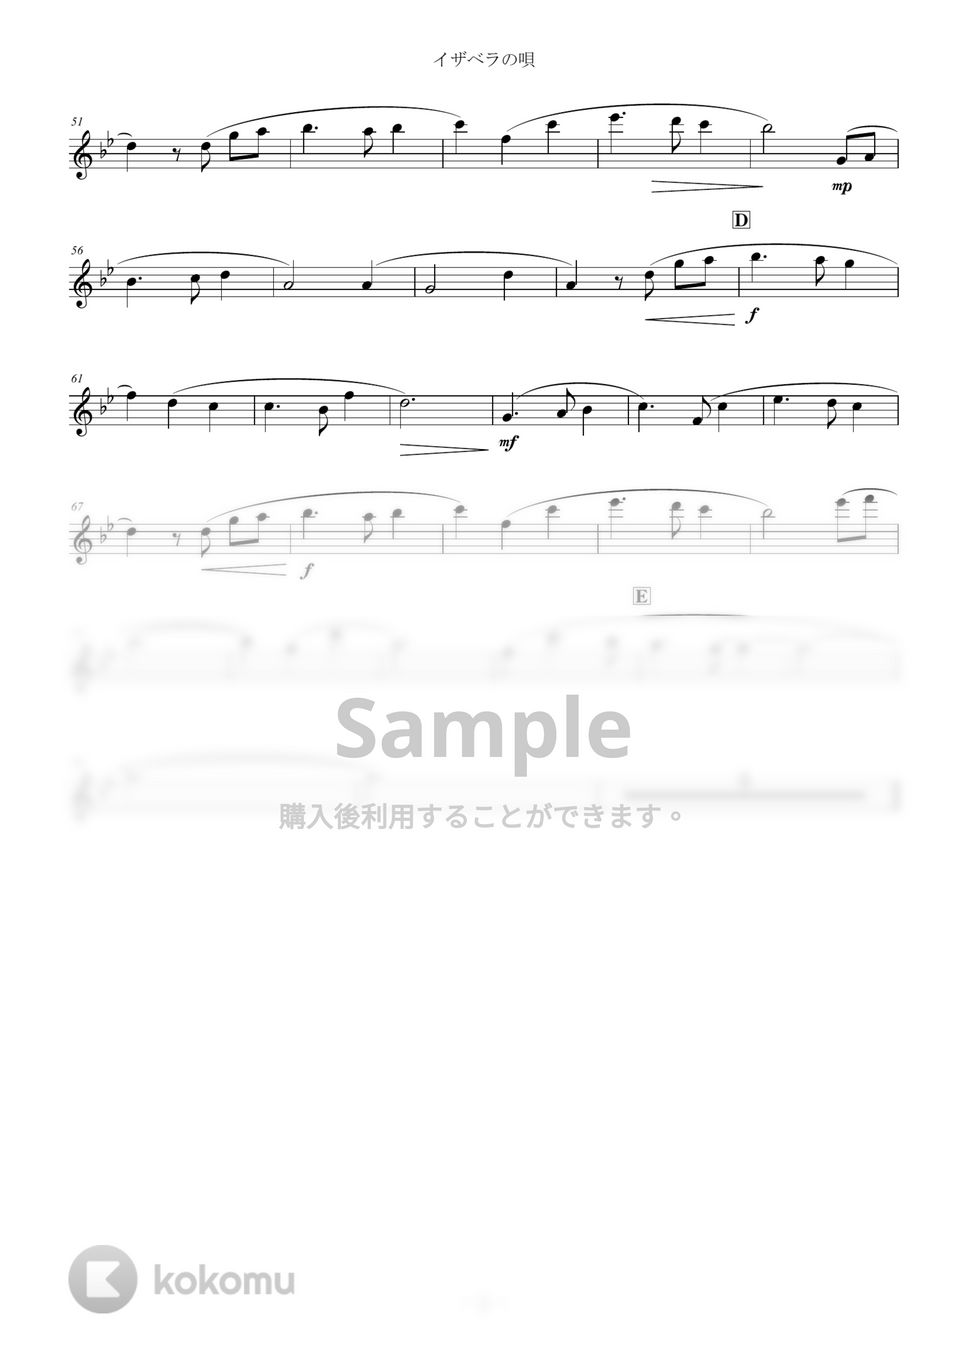 約束のネバーランド - イザベラの唄 (inE♭) by y.shiori